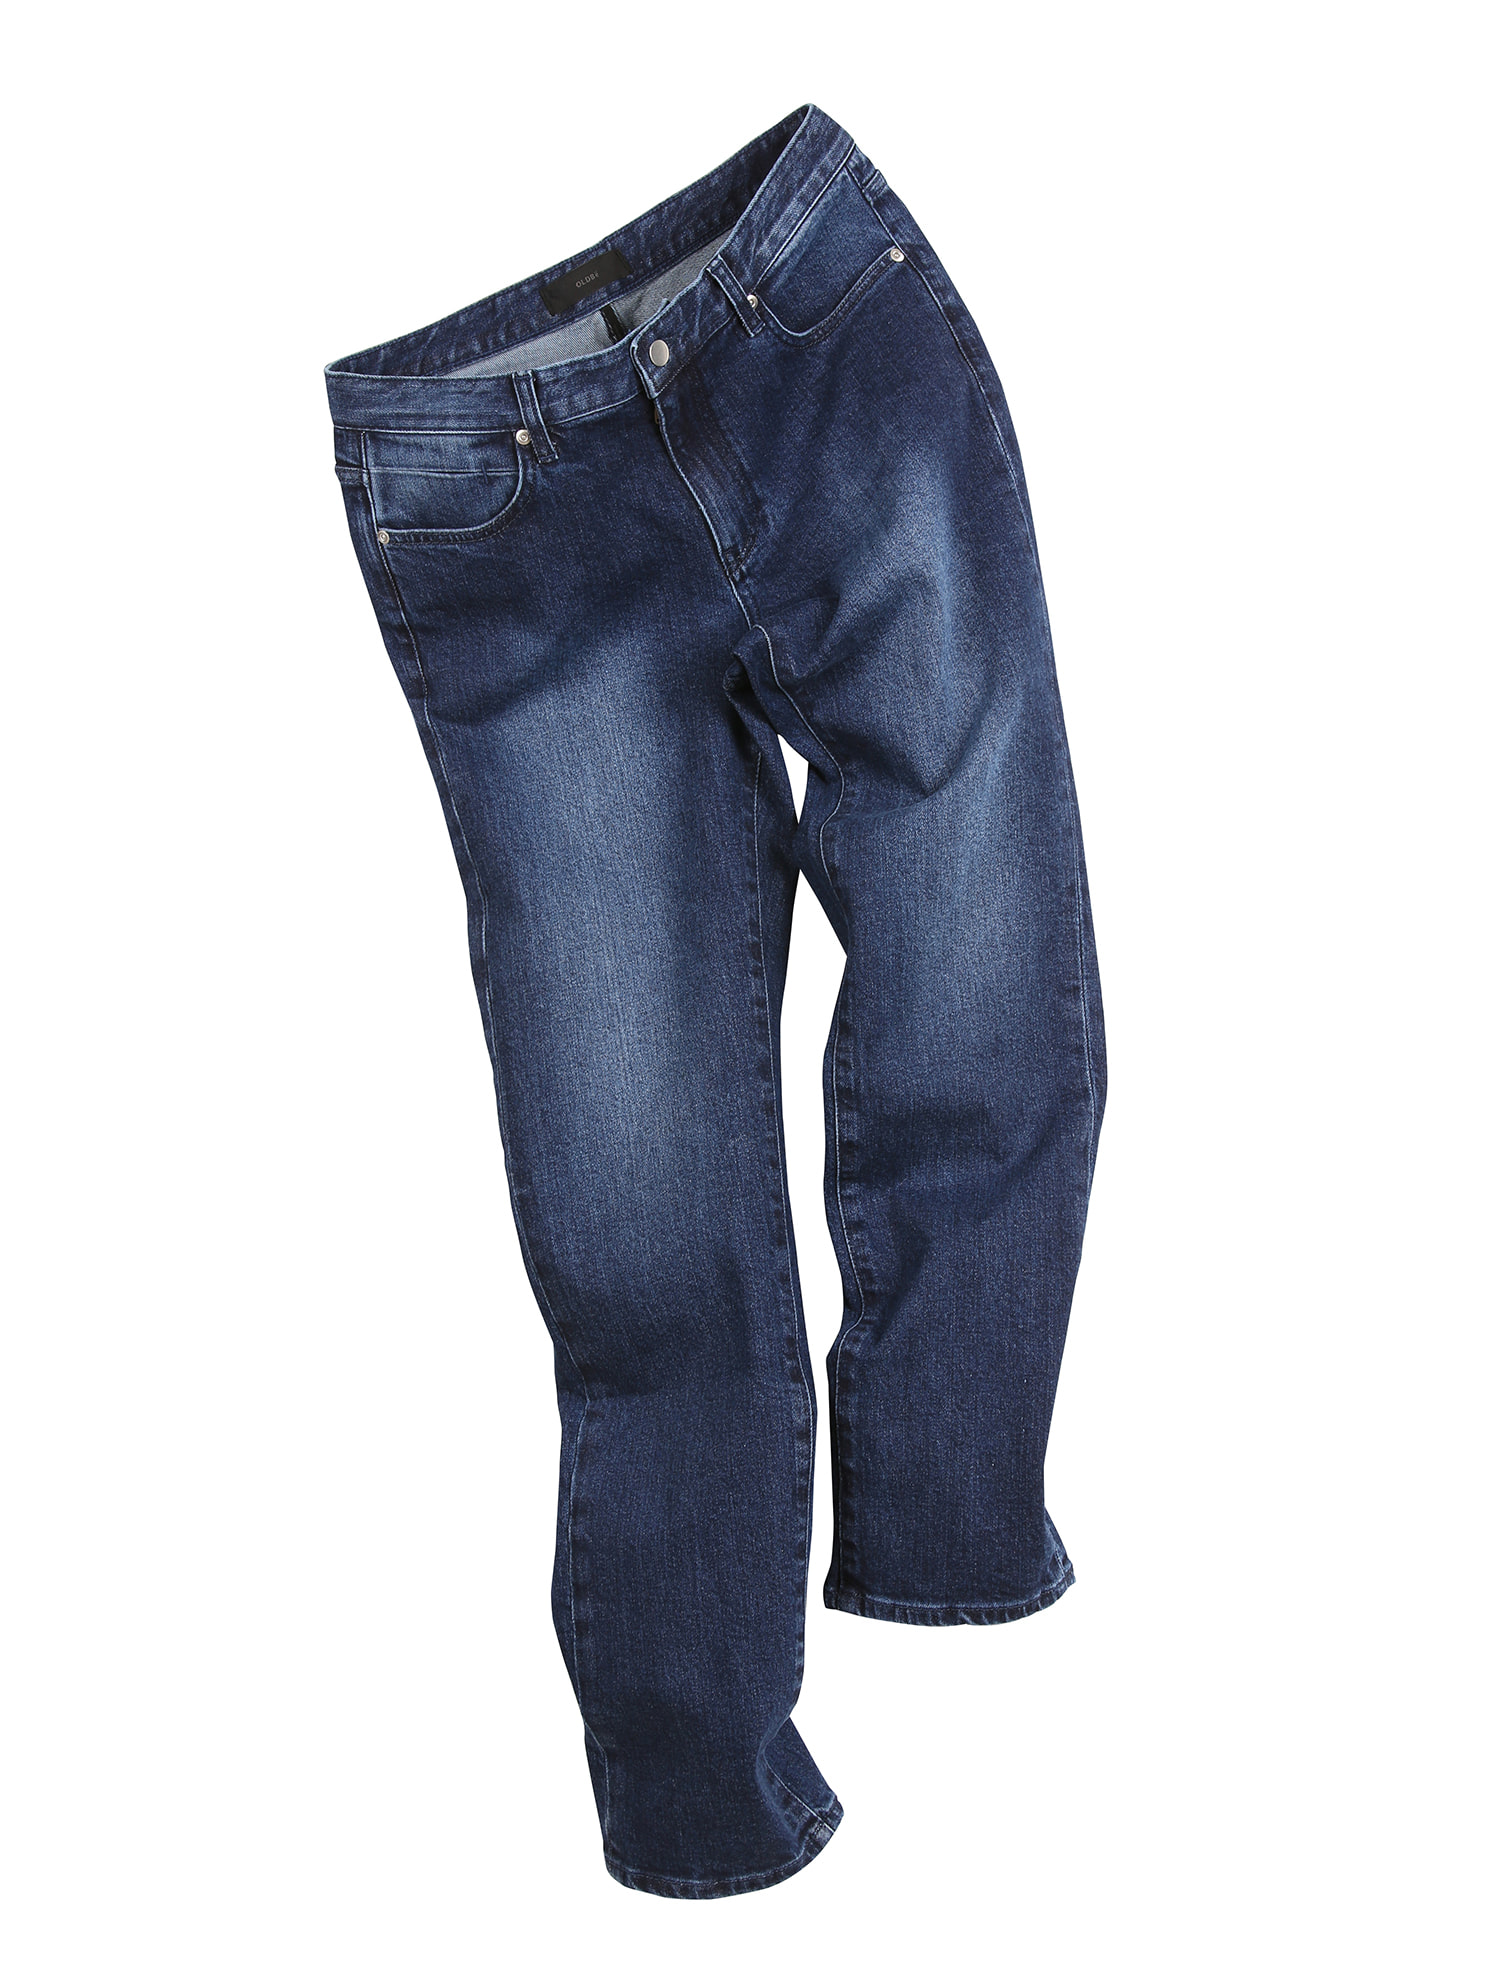 [올드비] TYPE1 Slim Tapered M2 Jeans